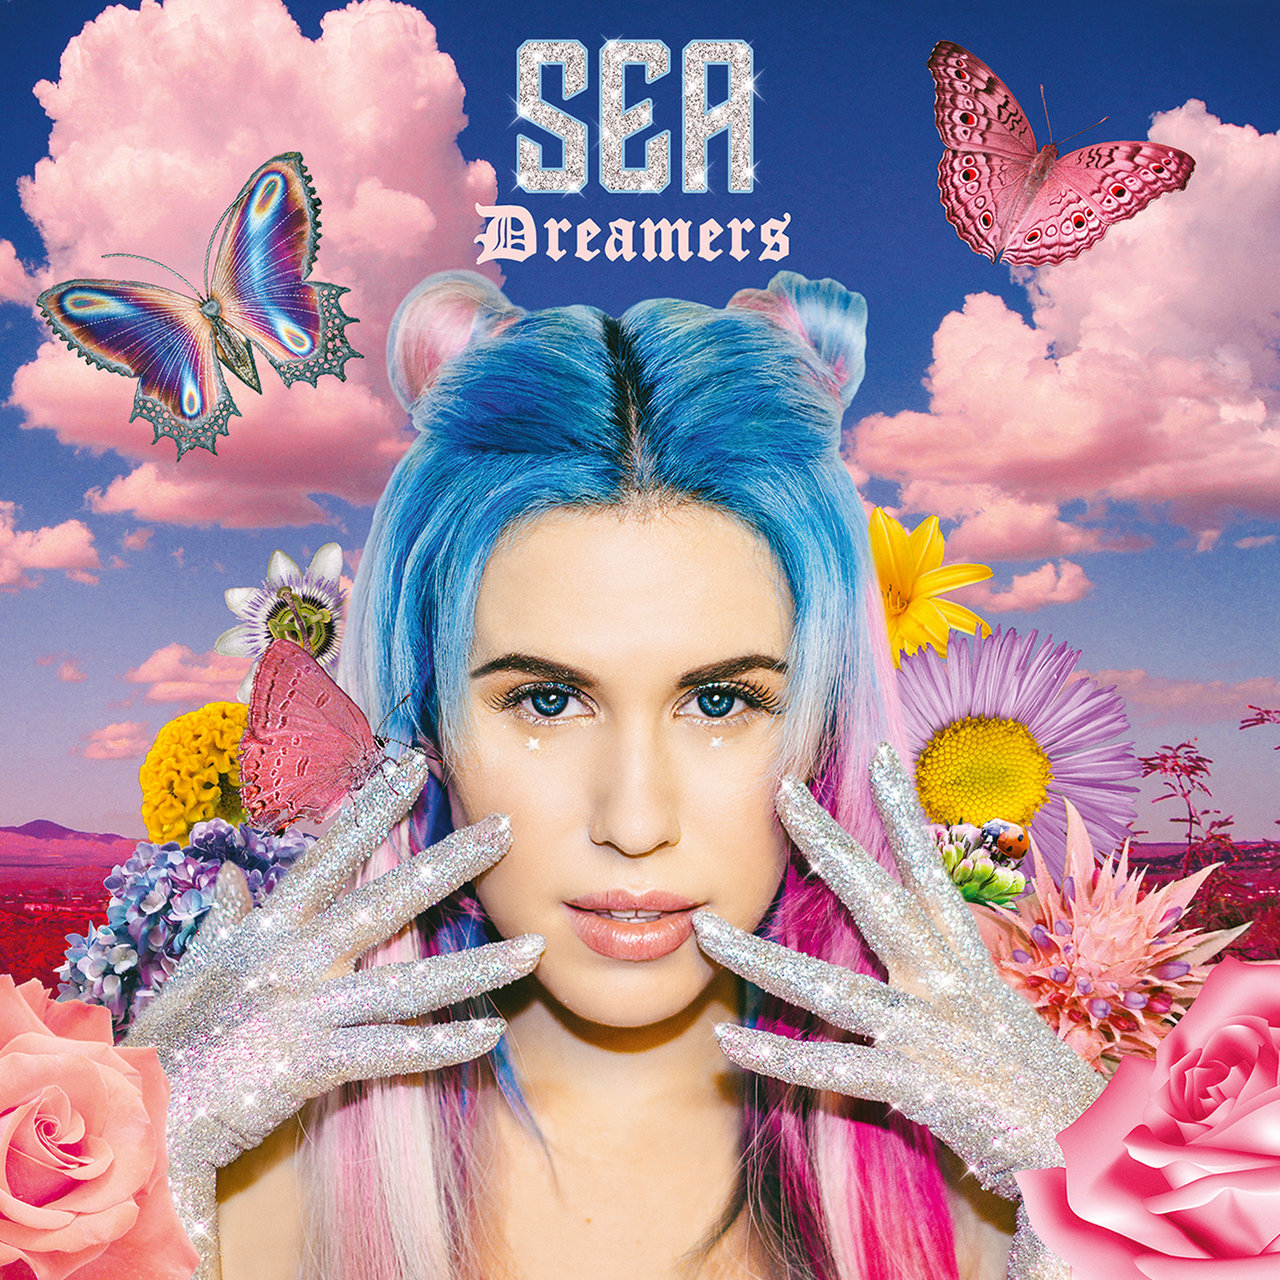 SEA Dreamers cover artwork